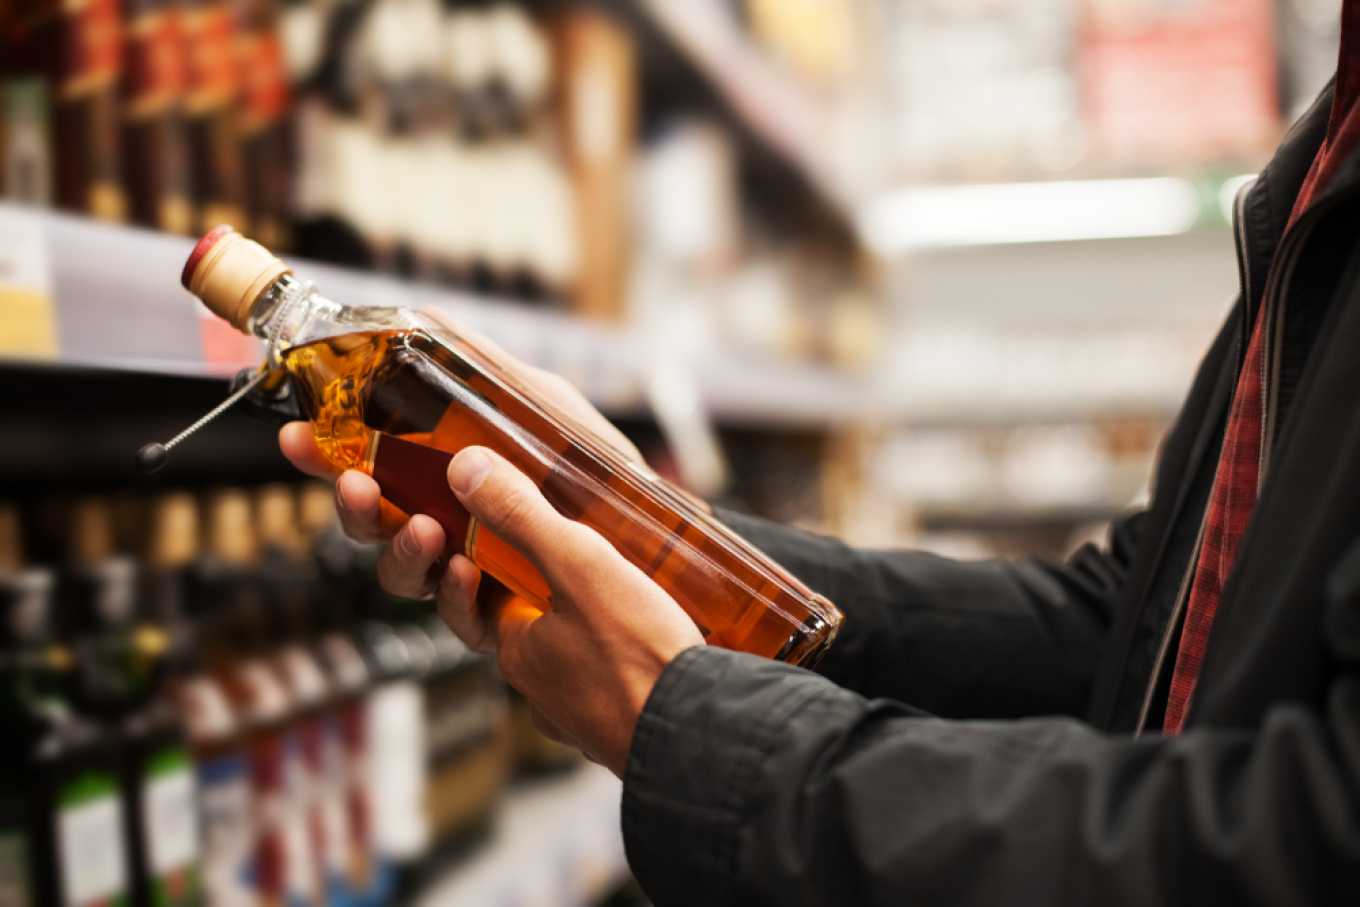 Έκλεβε αλκοολούχα ποτά από σούπερ μάρκετ σε Λάρισα, Ελασσόνα και Βόλο 